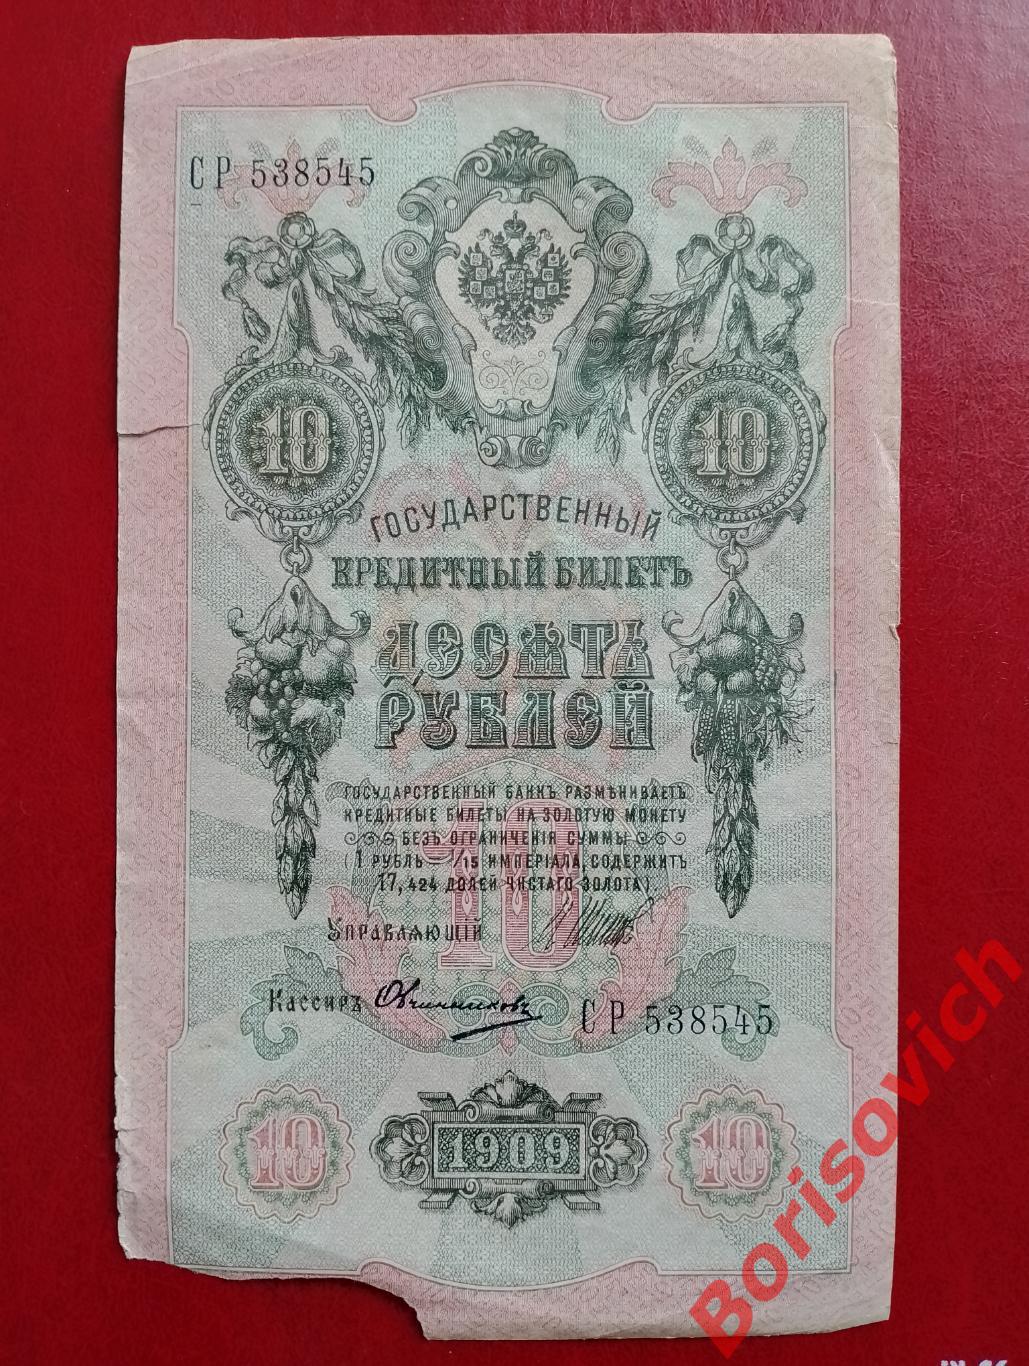 10 рублей 1909 г Управляющий ШИПОВ Кассир ОВЧИННИКОВ. СР 538545